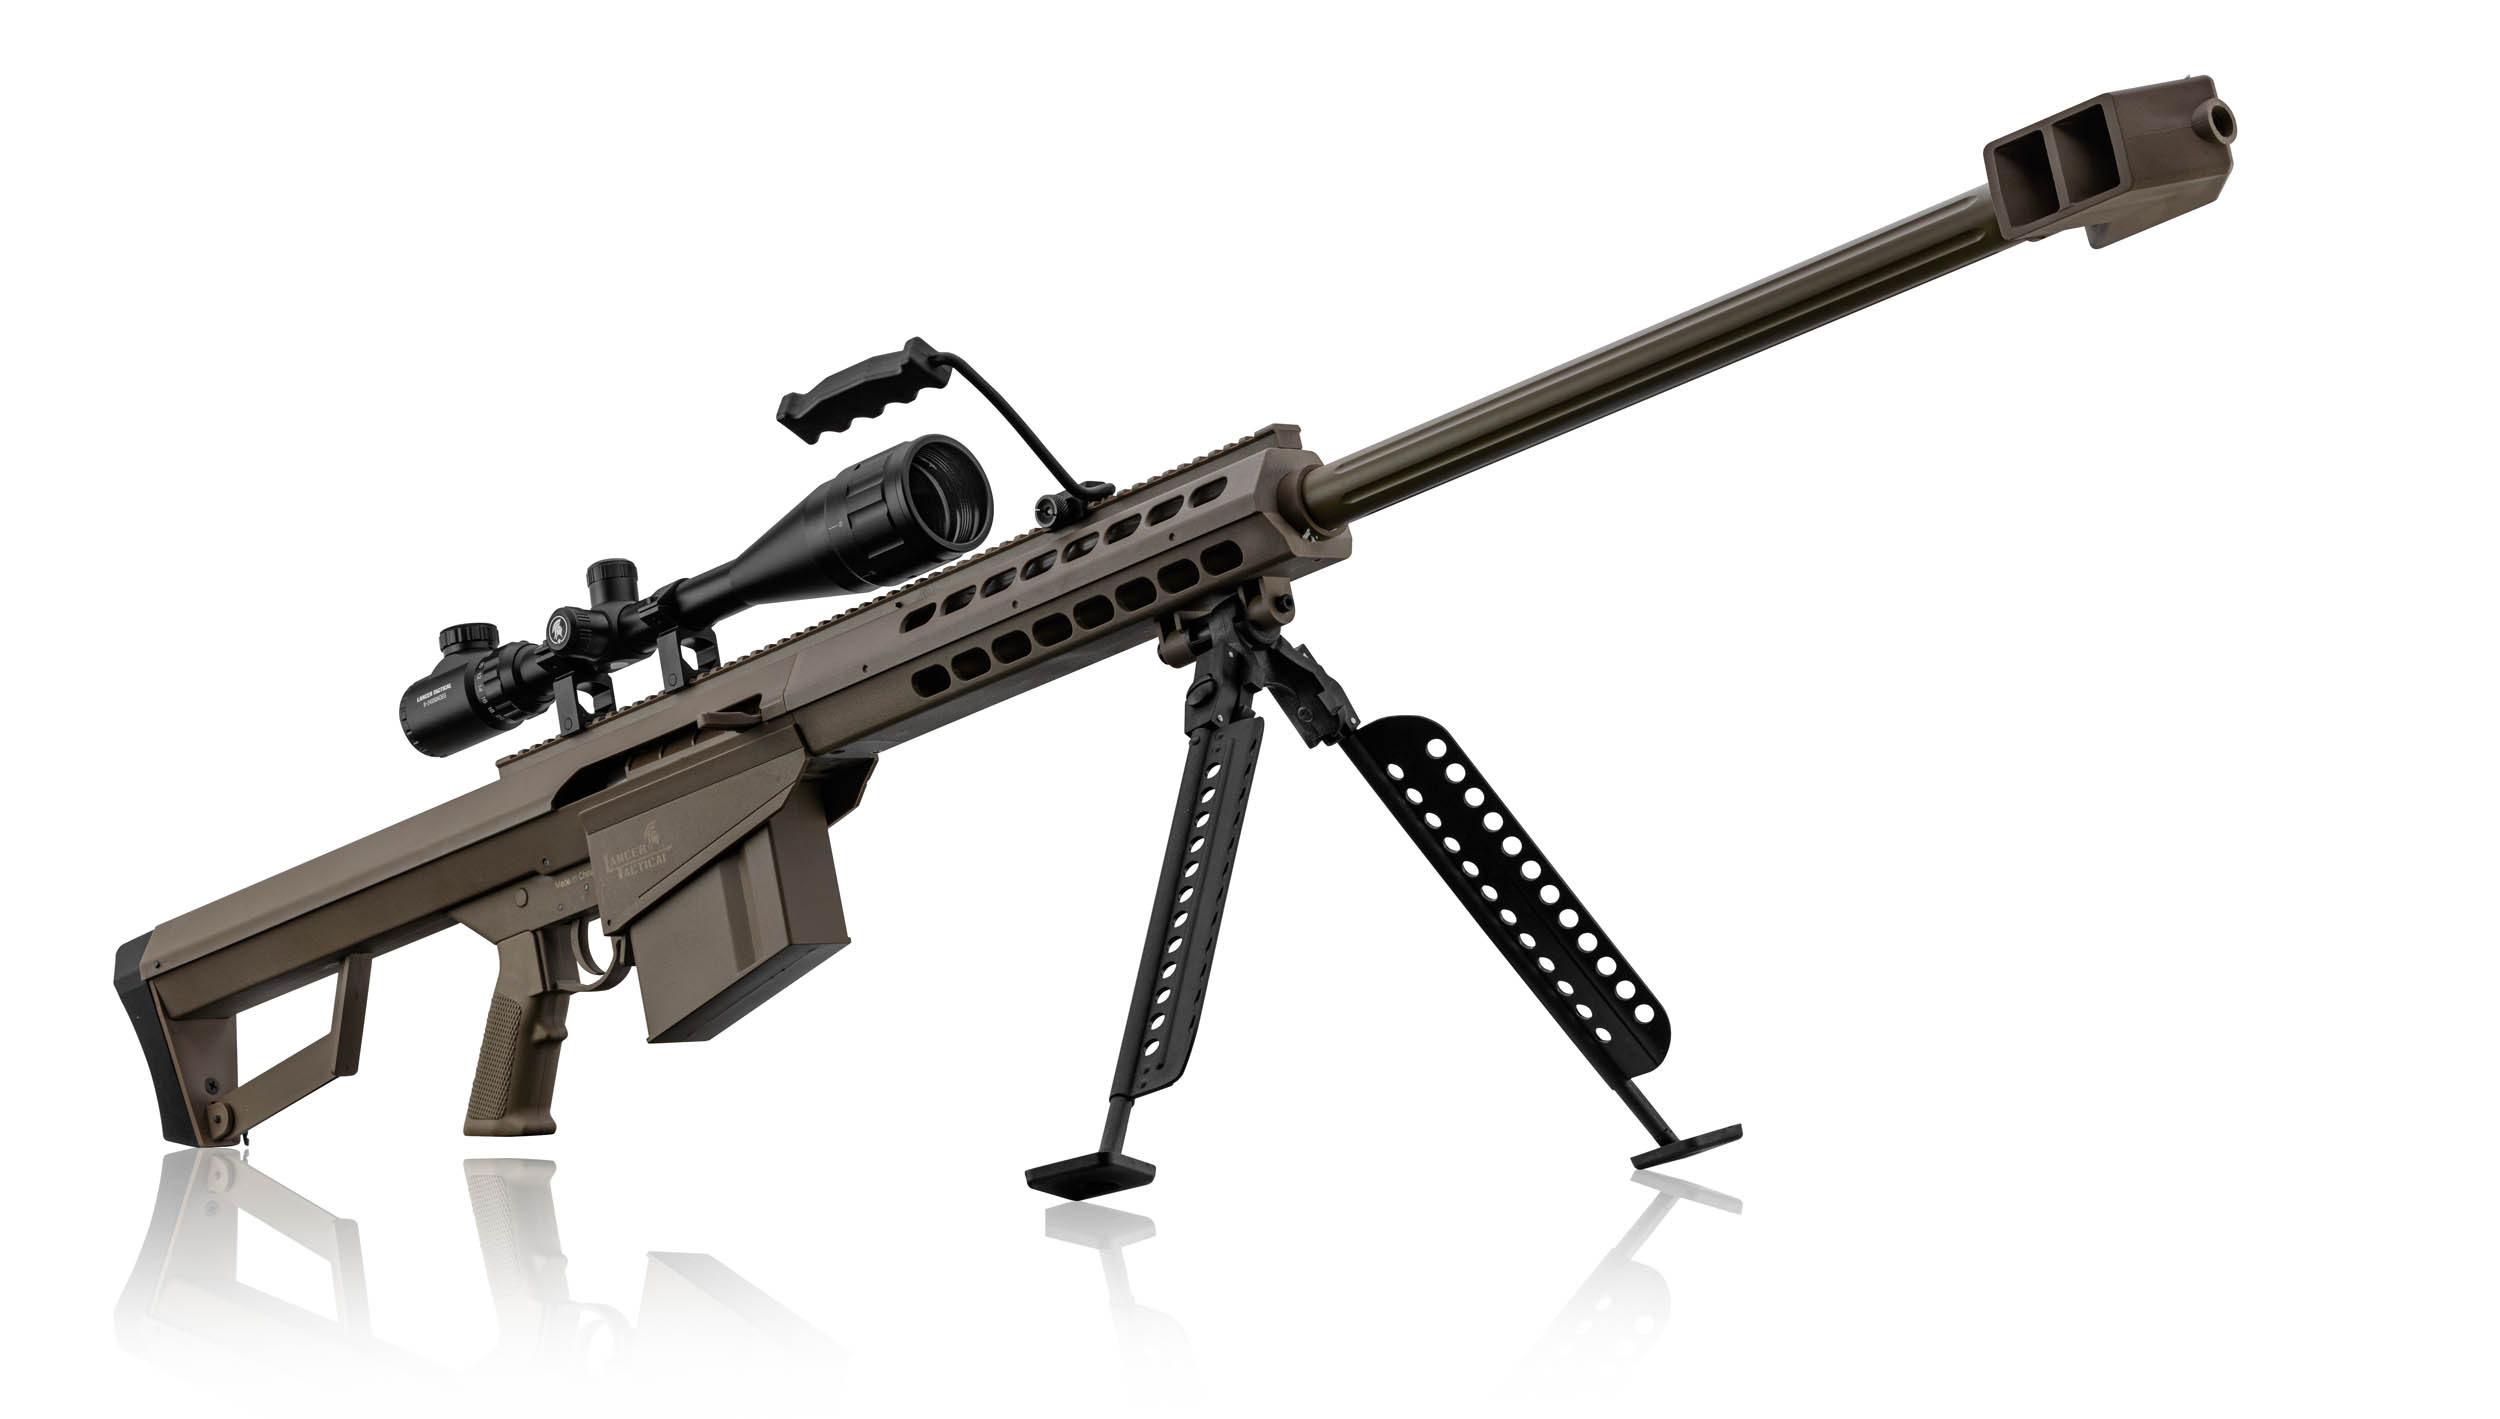 Pack Sniper LT-20 tan M82 1,5J + lunette + bi-pied - Pack Sniper LT20 tan - Lancer Tactical